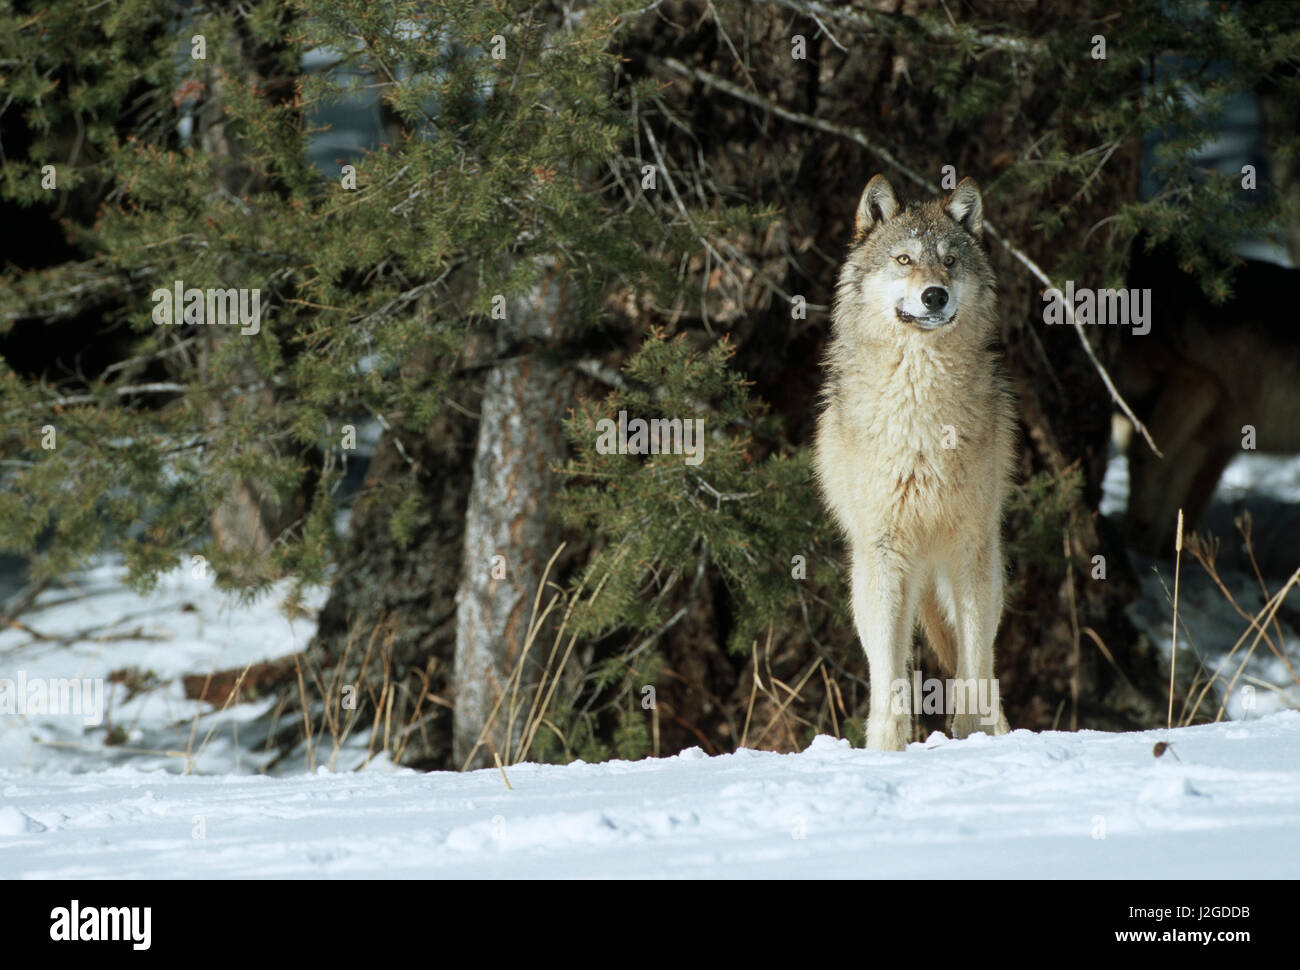 Lobo gris (Canis lupus) en invierno mirando a través de los árboles, Montana (cautivo) Foto de stock